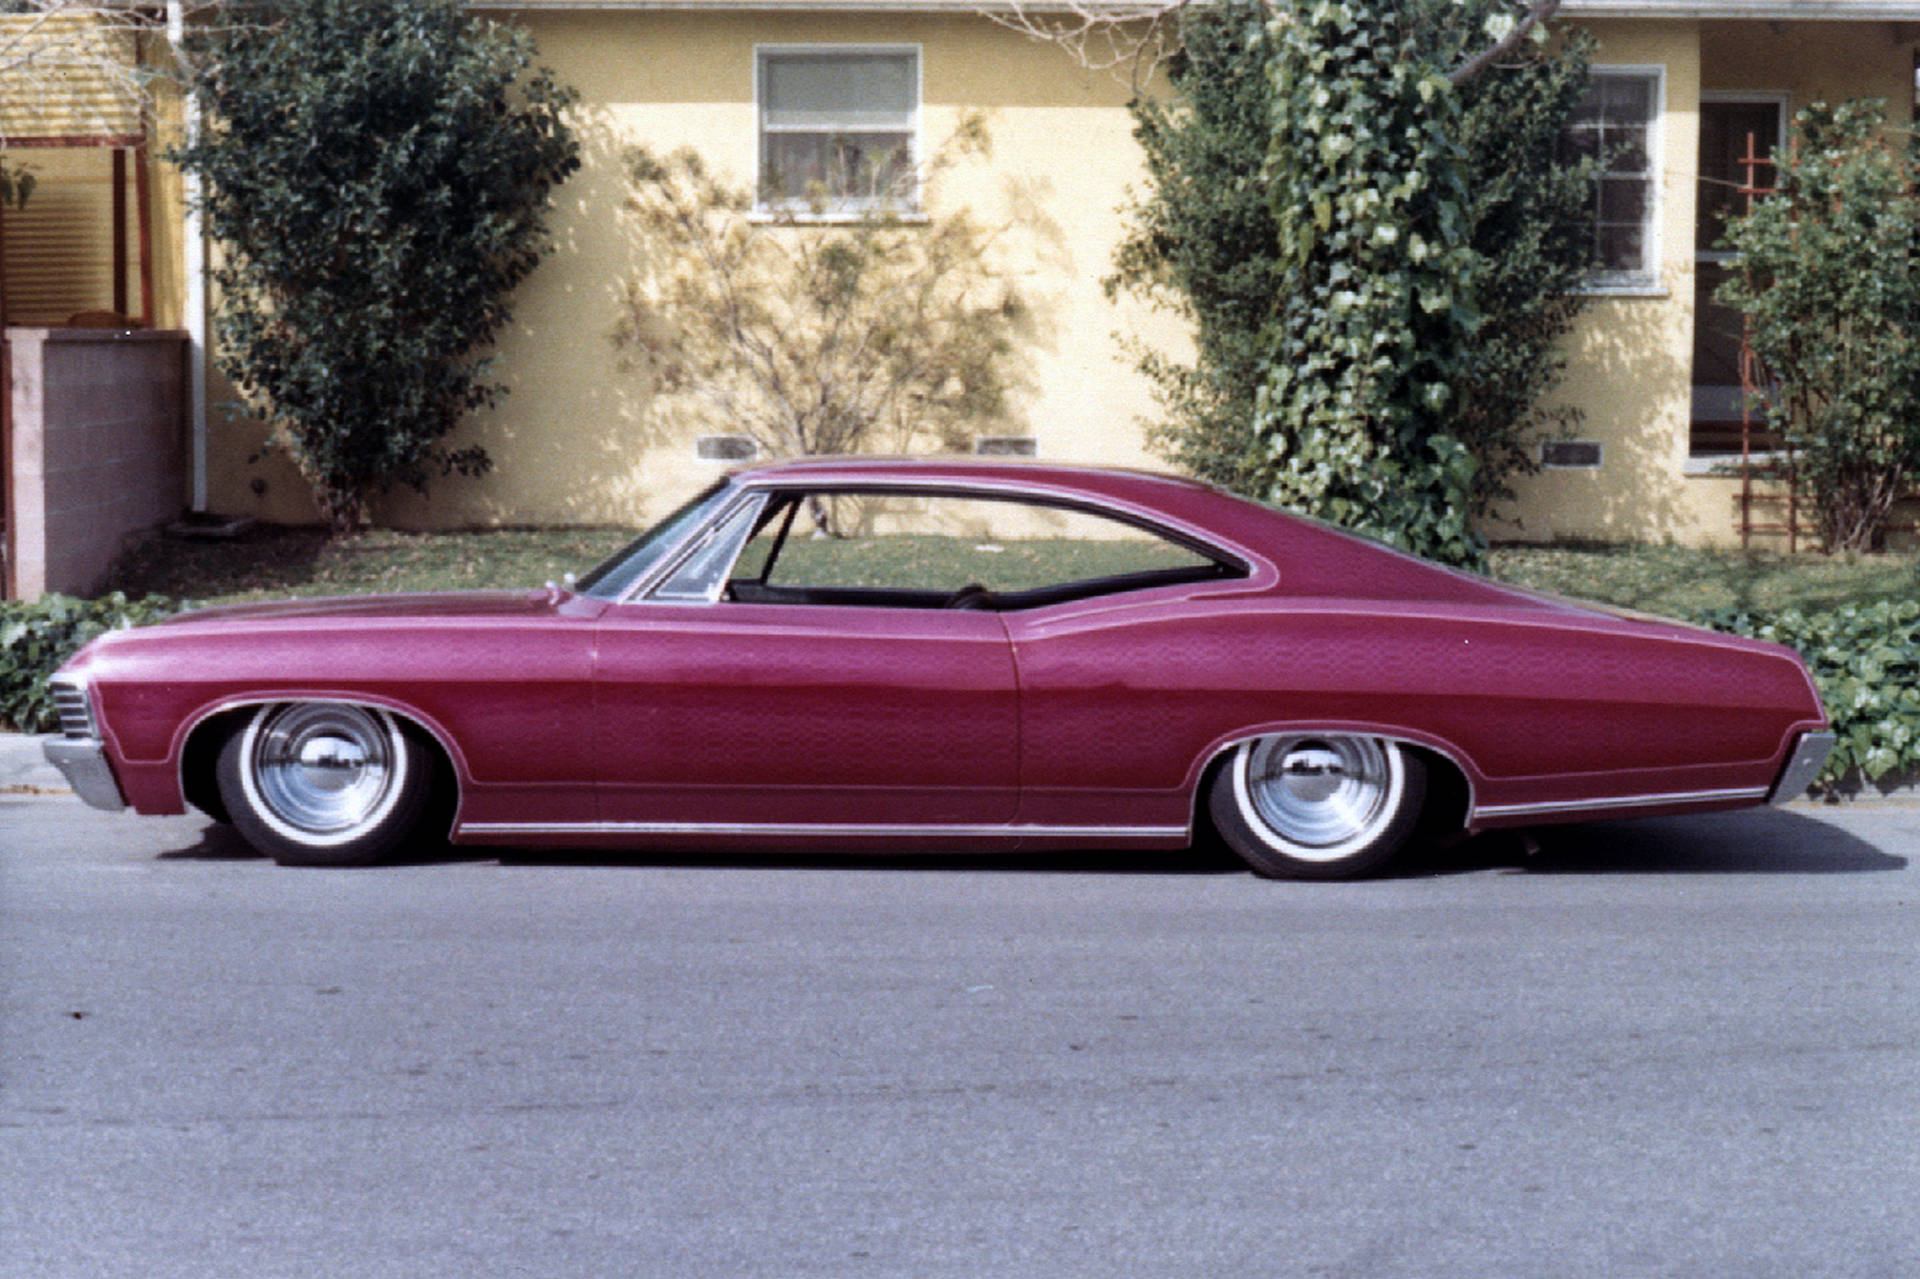 Mörkrosachevrolet Impala 1967. Wallpaper